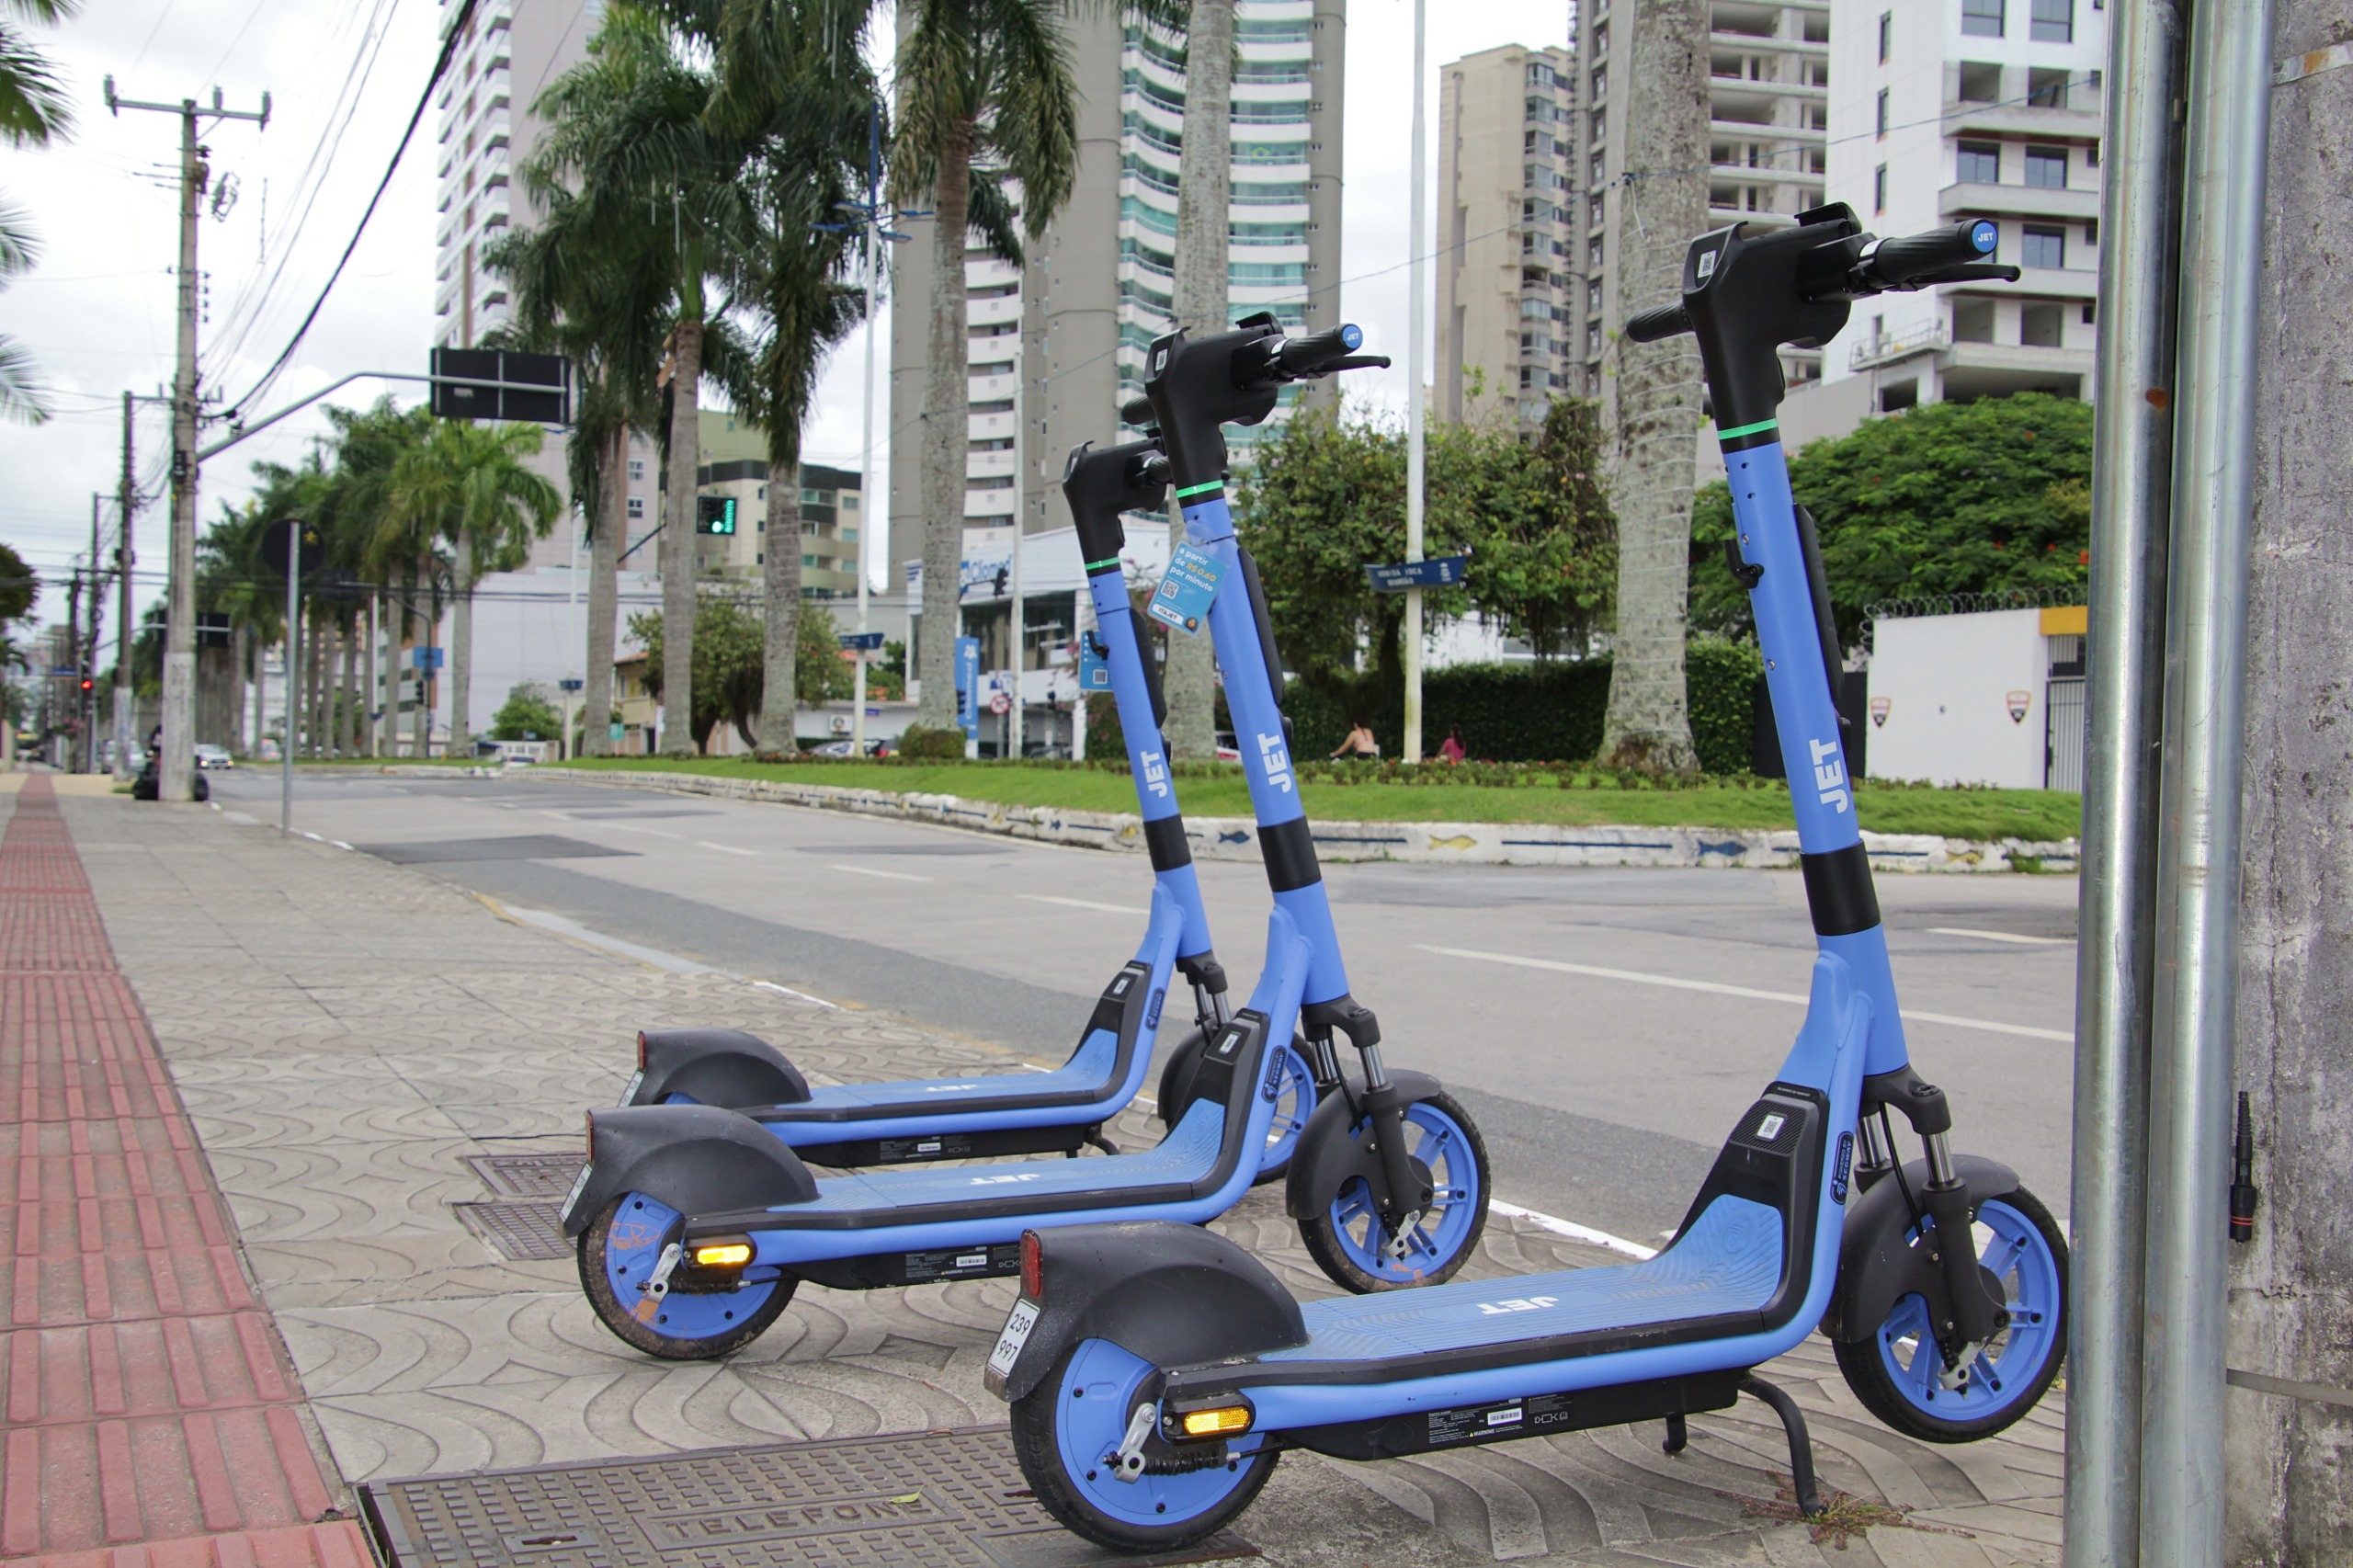 Mobilidade sustentável ganha reforço em Itajaí com patinetes elétricos